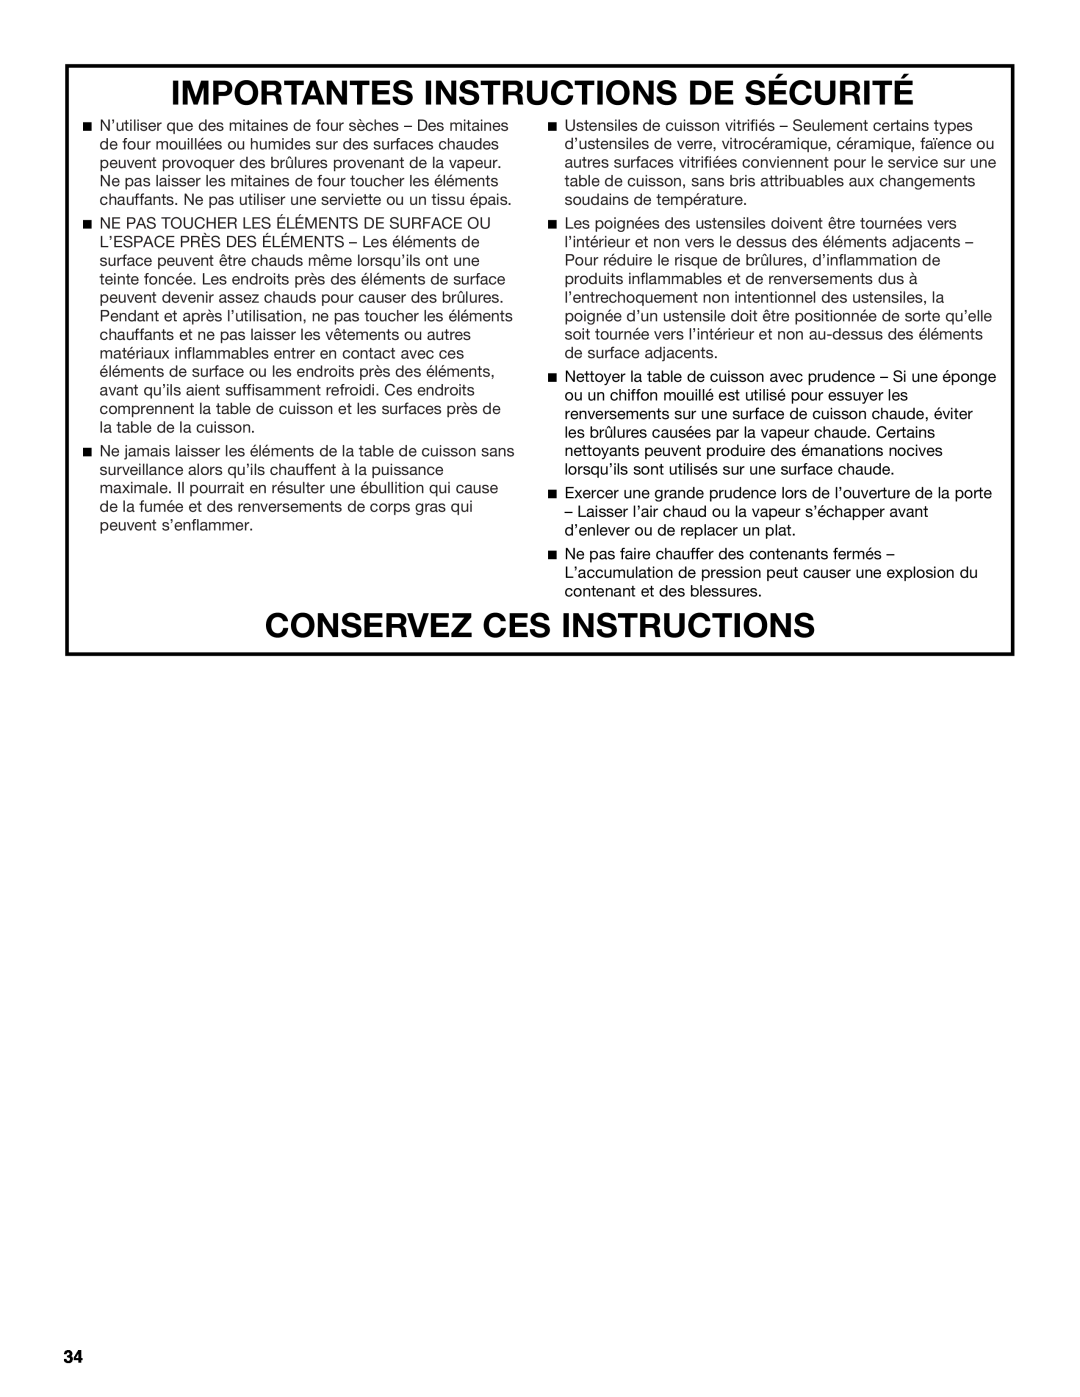 KitchenAid KDRS462, KDRS467, KDRS463, KDRS483, KDRS407 manual Importantes Instructions De Sécurité, Conservez Ces Instructions 